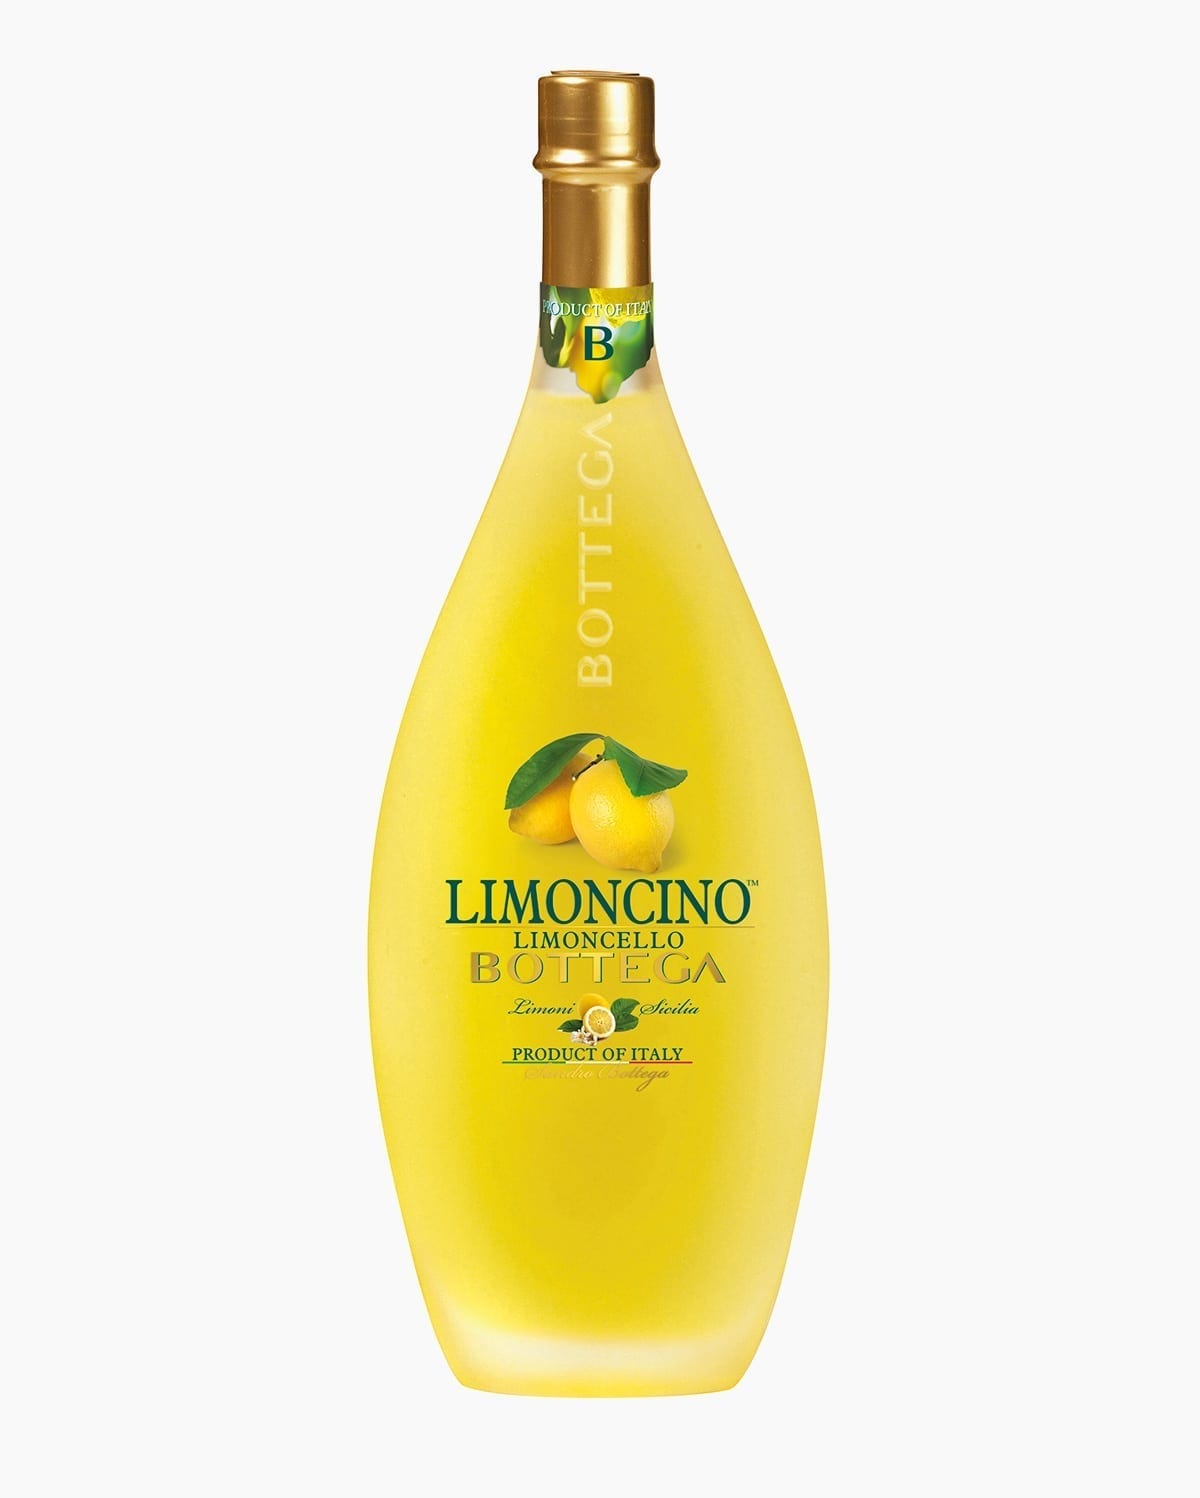 Limoncino Italian Liquor - Lemon creamy liquor - Bottega Spa